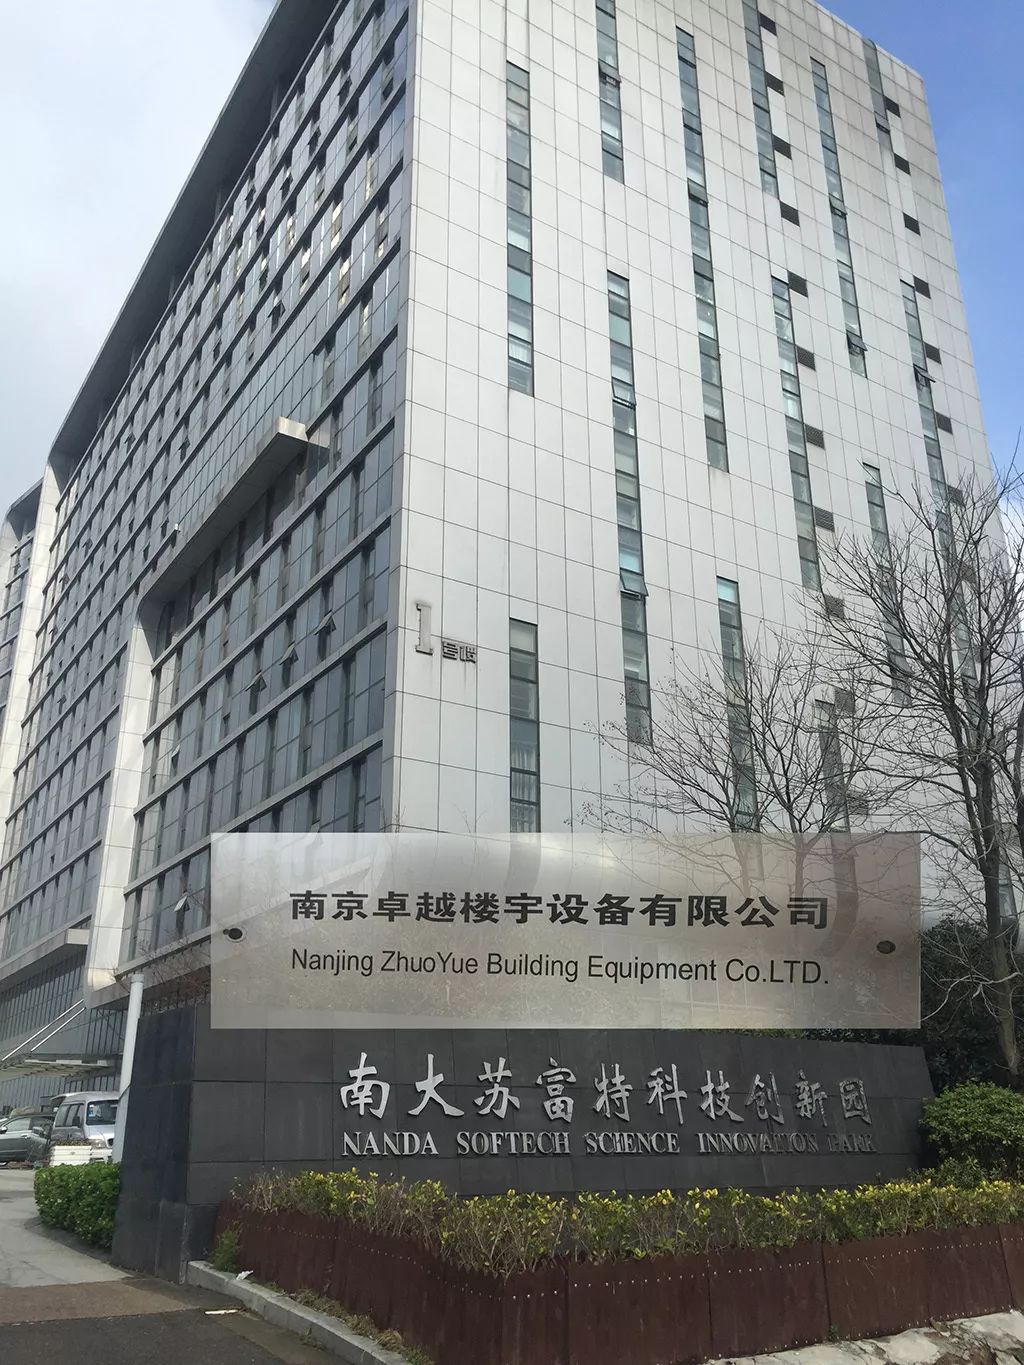 连云港润众制药是江苏正大天晴药业股份有限公司的全资子公司.